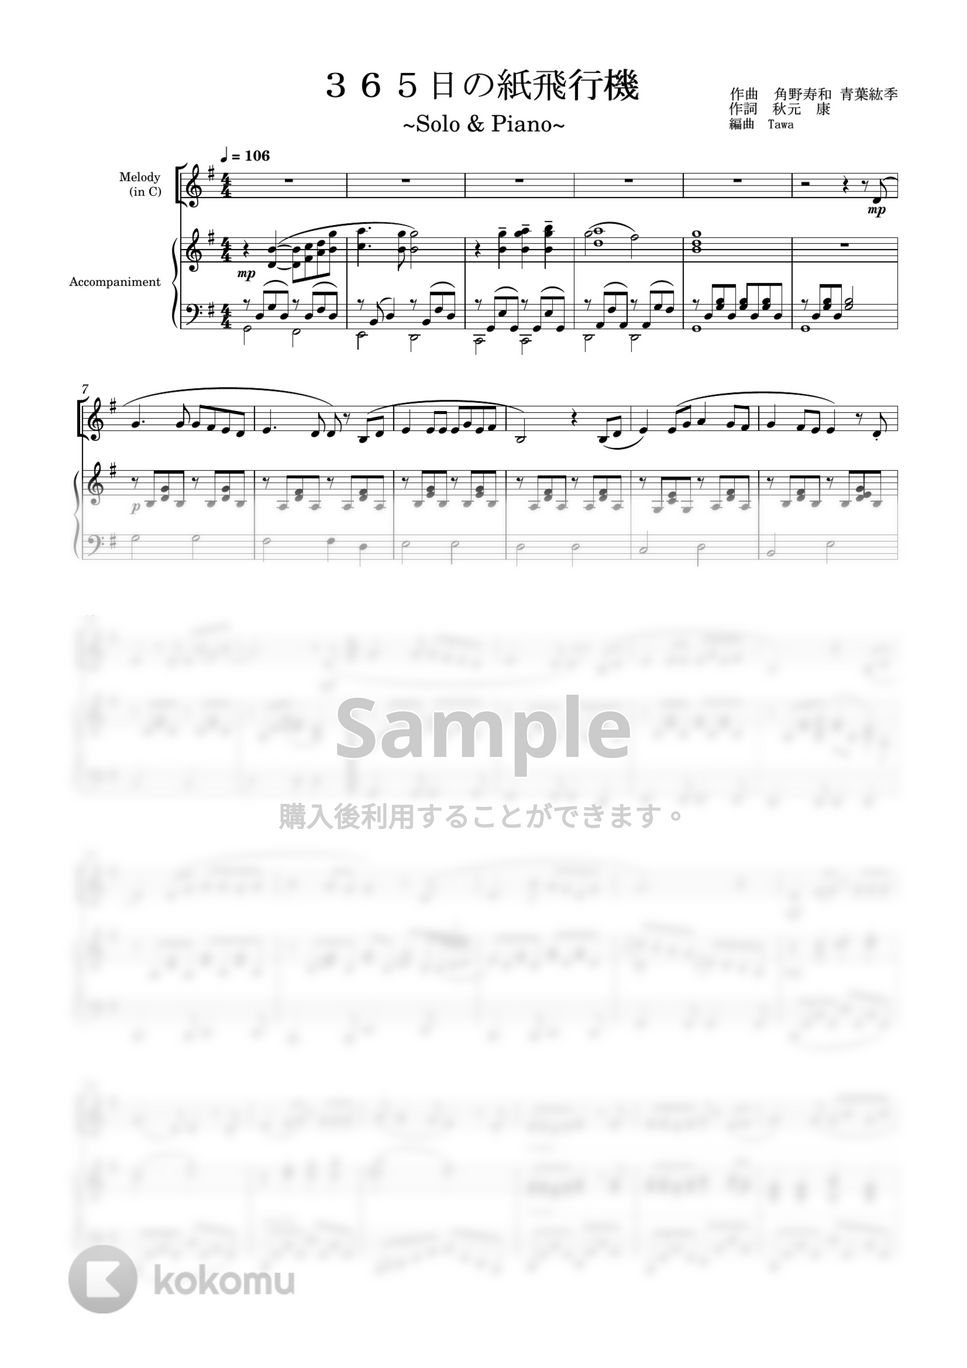 AKB48 - 365日の紙飛行機 (ソロ(in C) / ピアノ伴奏) by Tawa